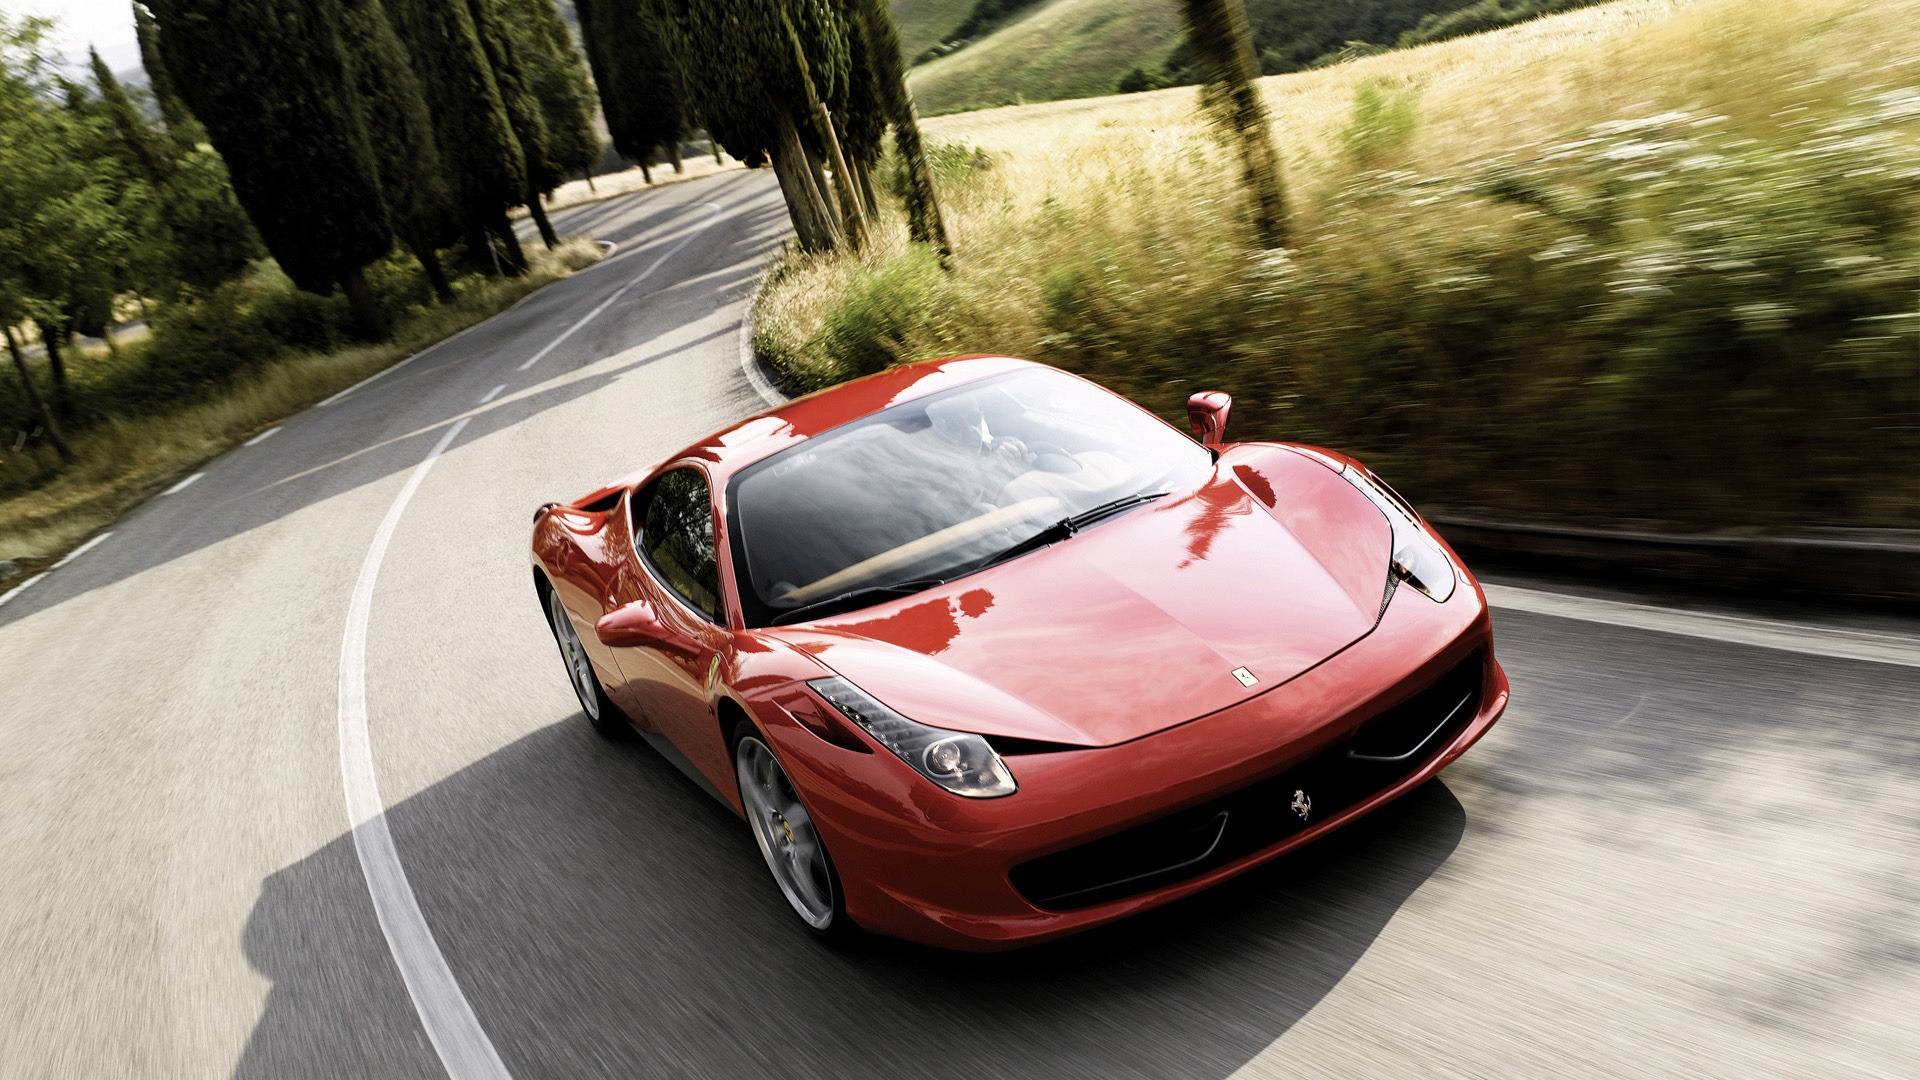 Ferrari 458 2011 Speed for 1920 x 1080 HDTV 1080p resolution